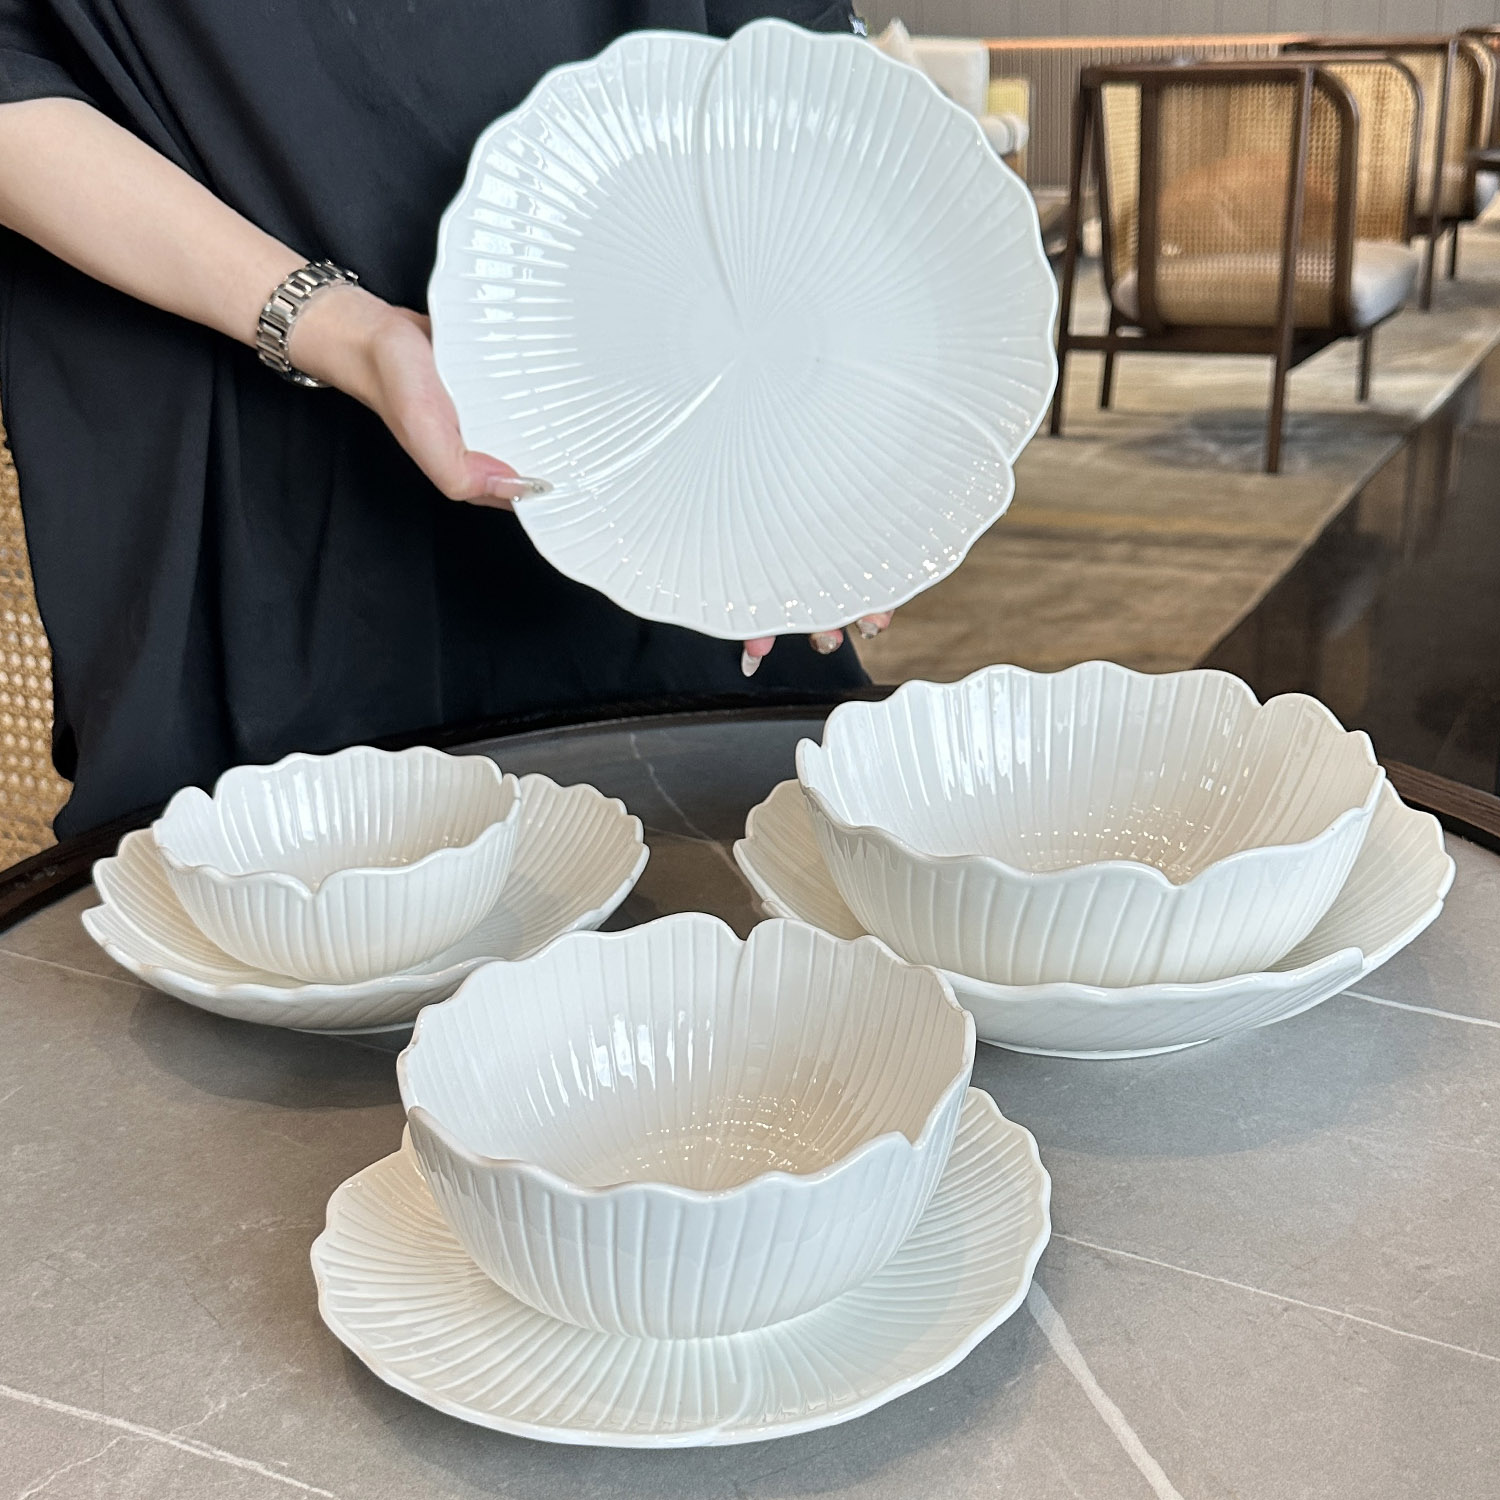 【老板娘自用】复古花型浮雕陶瓷餐盘纯白色餐具菜盘子花边米饭碗